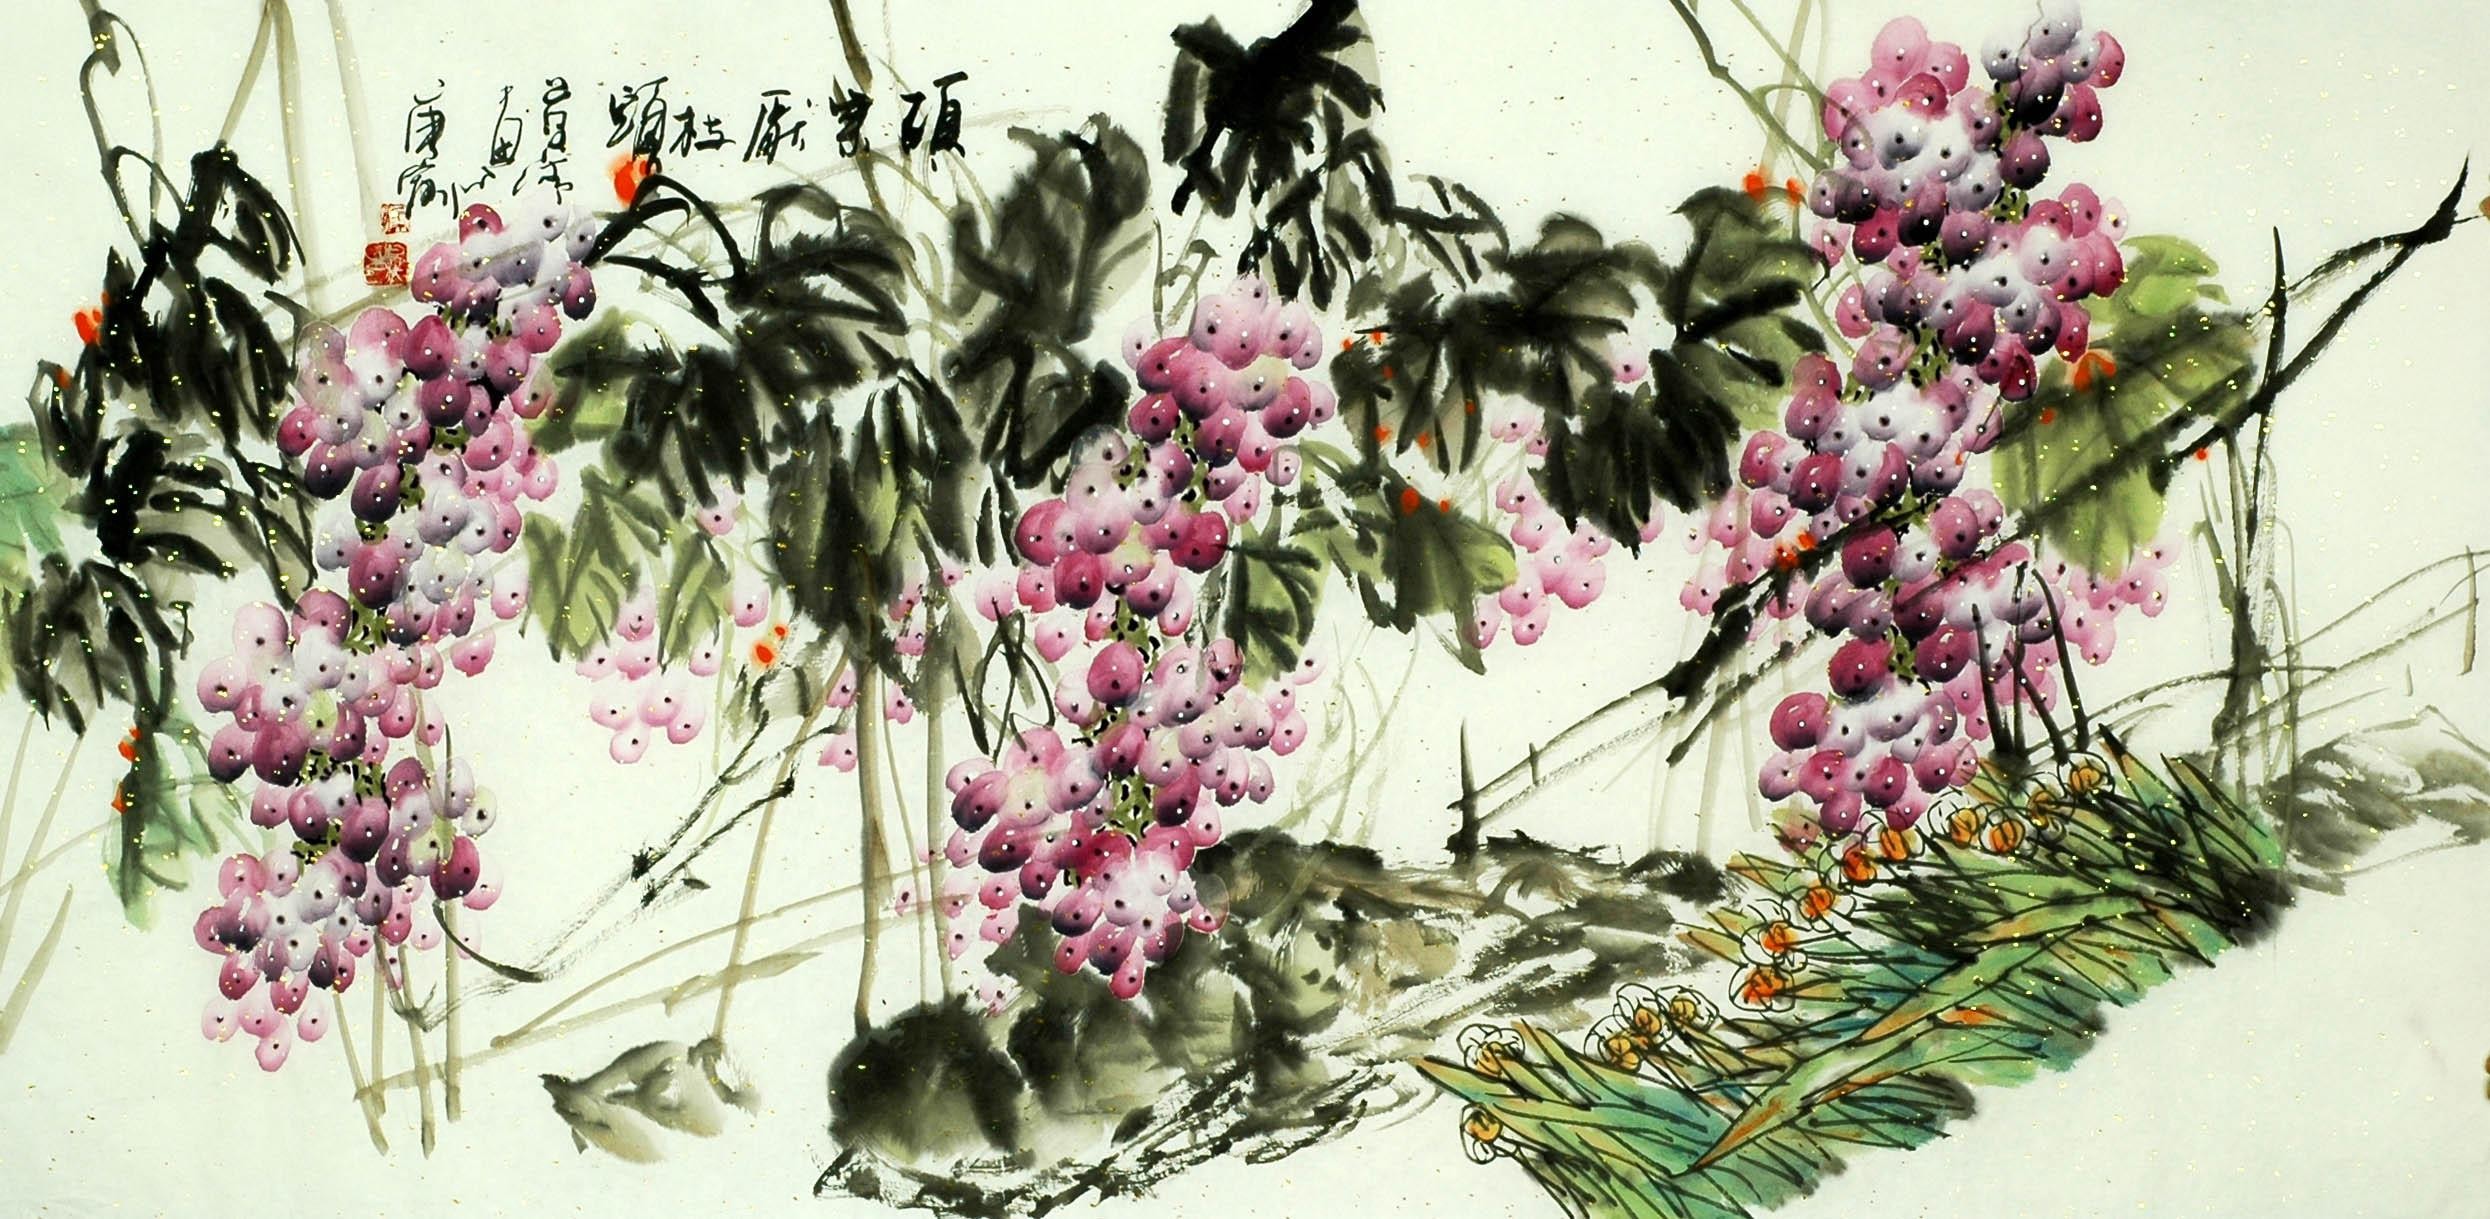 Chinese Grapes Painting - CNAG008264